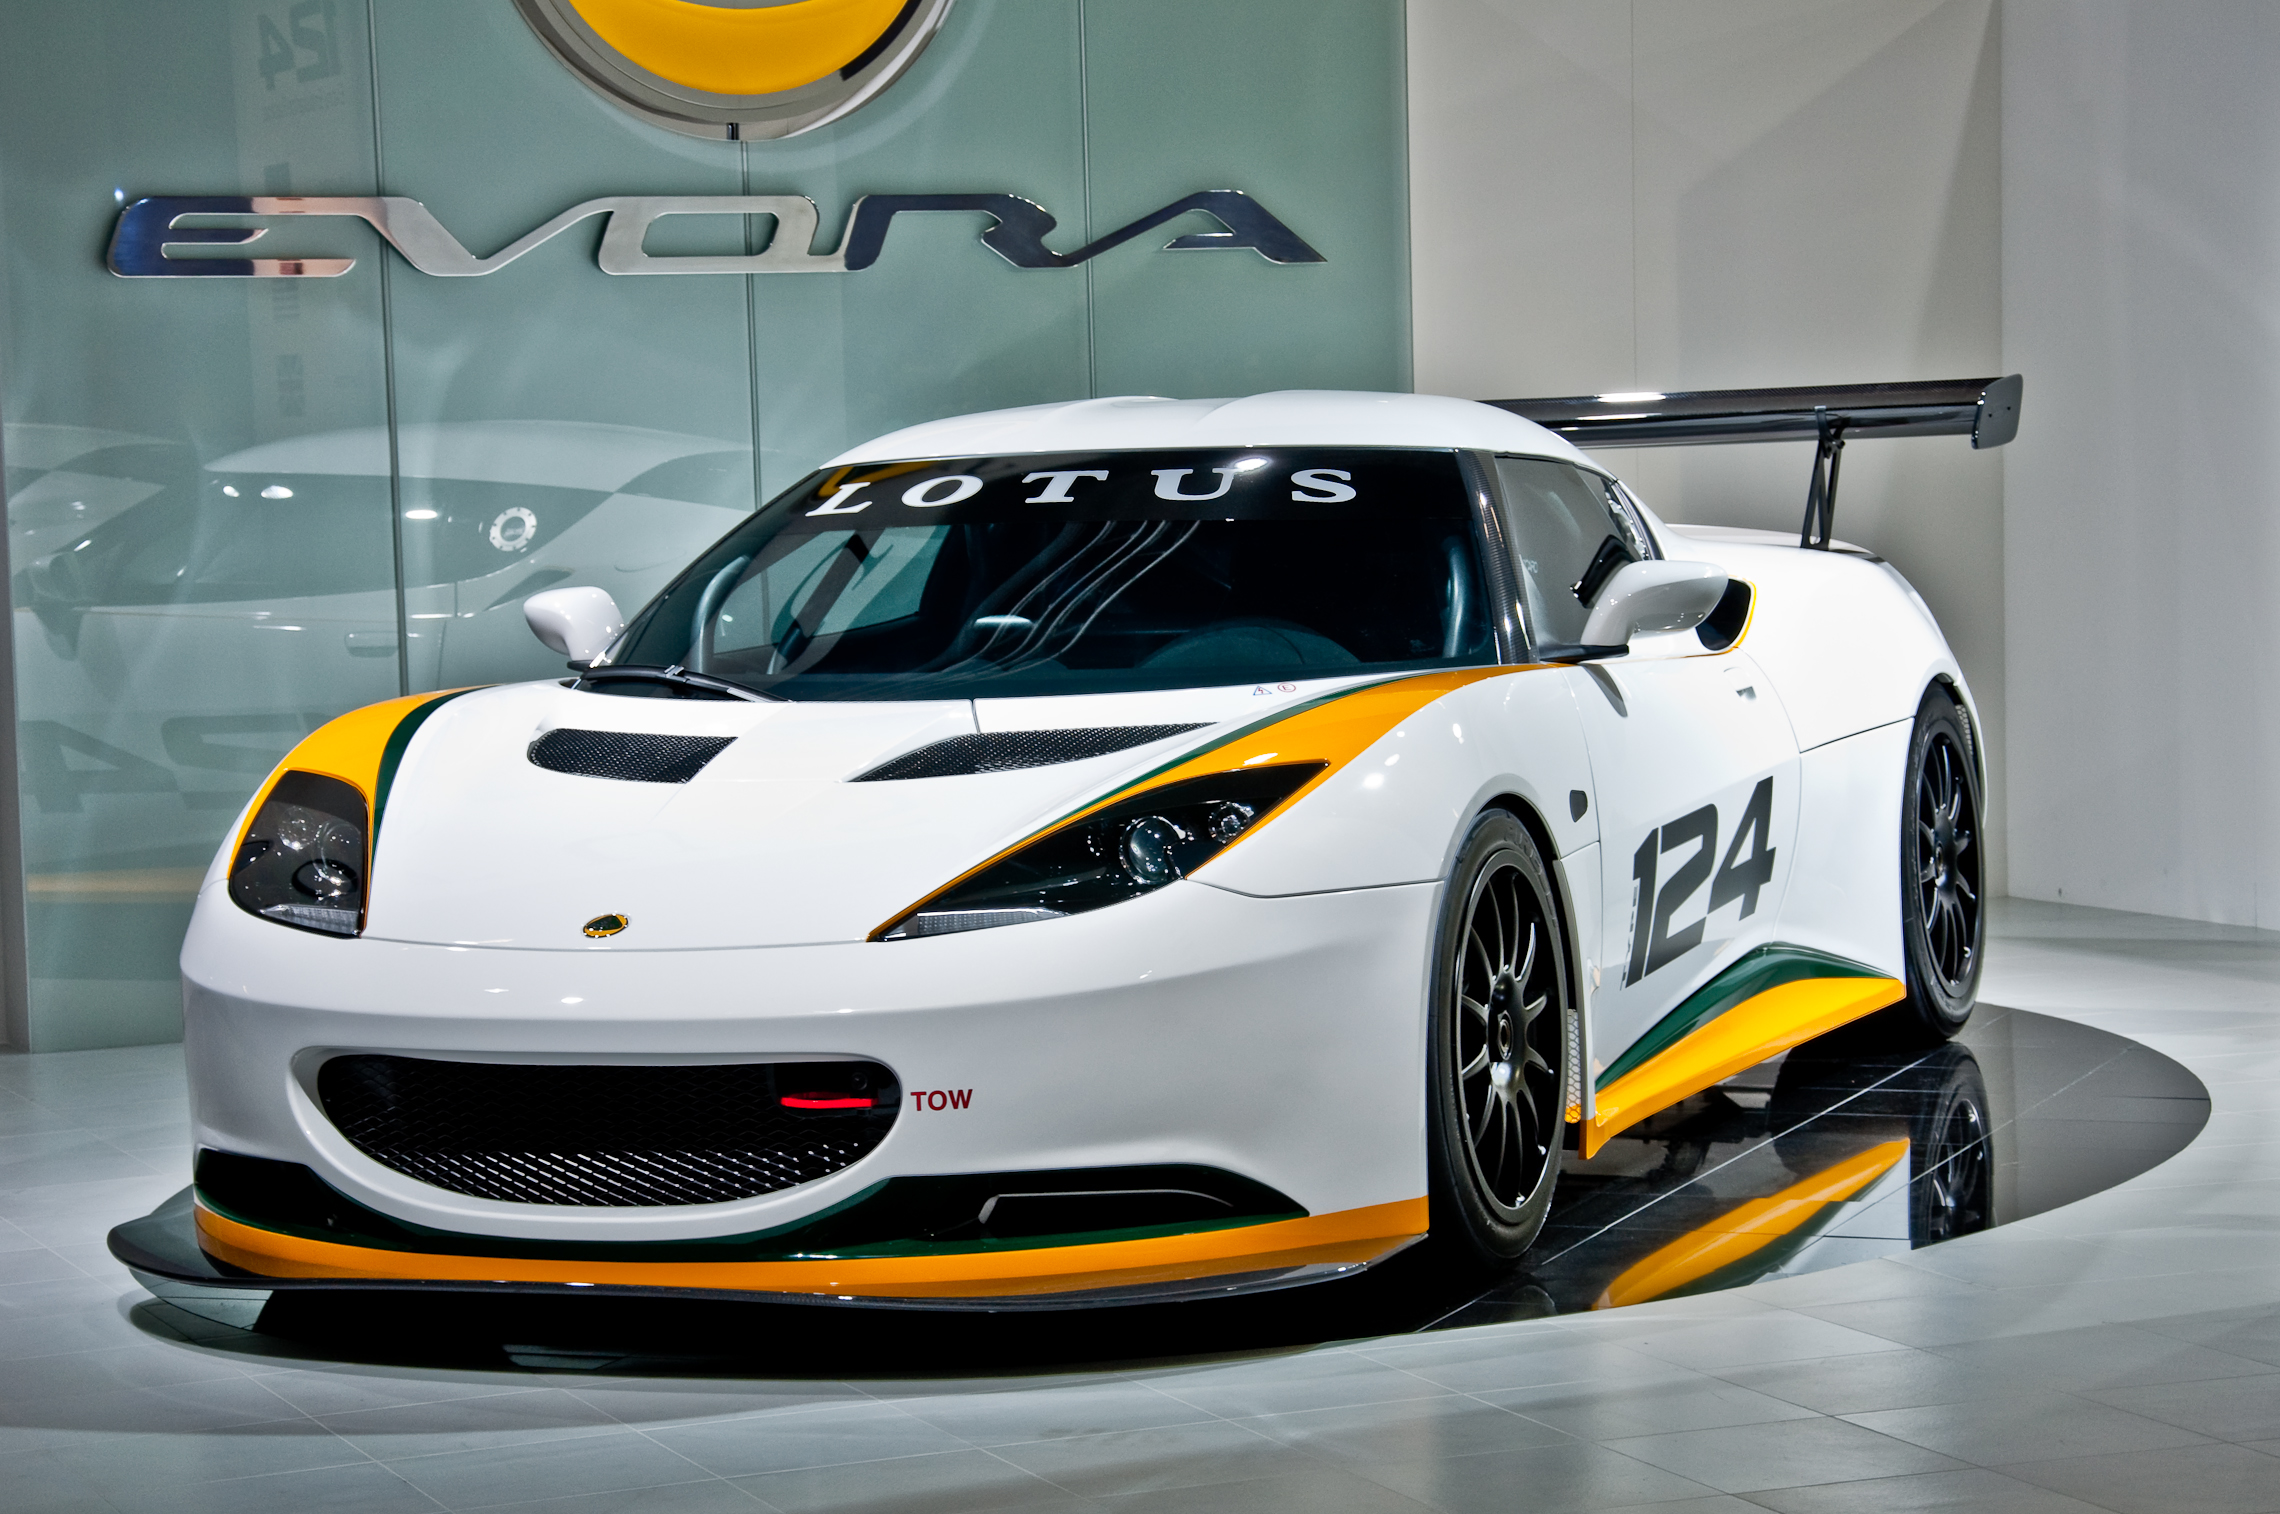 IAA 2009 - Lotus Evora Racing | Flickr - Photo Sharing!